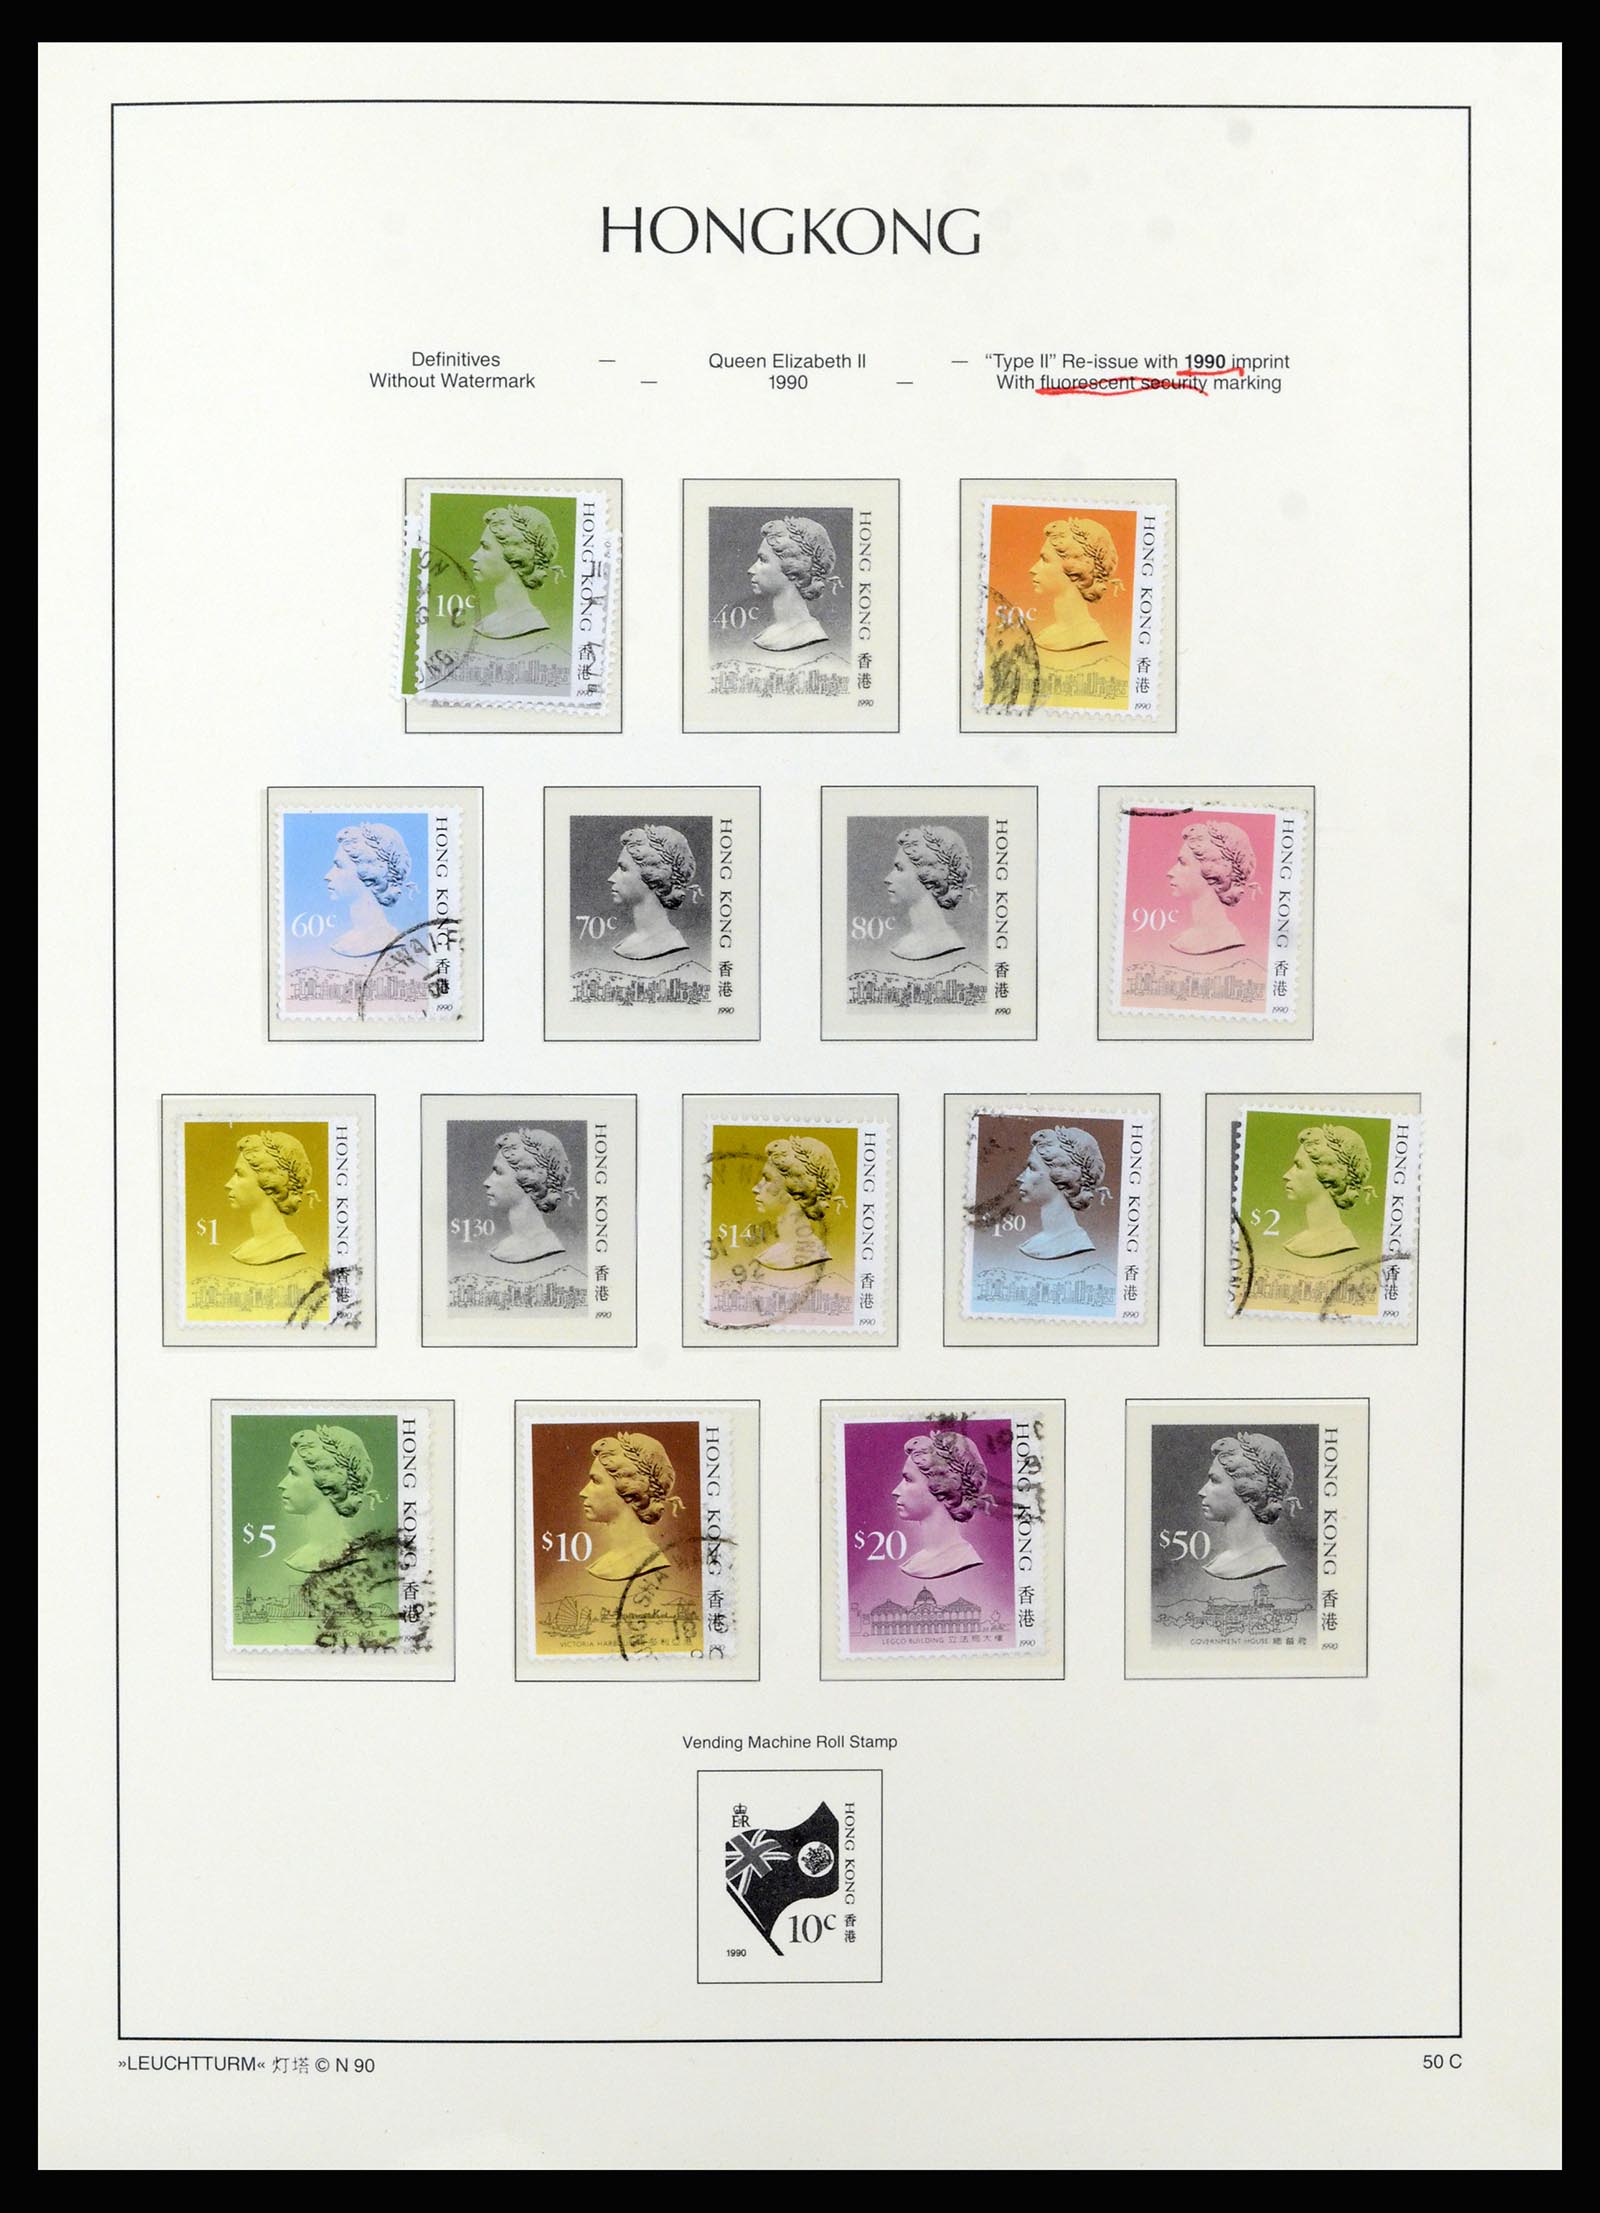 37070 058 - Stamp collection 37070 Hong Kong 1862-1996.